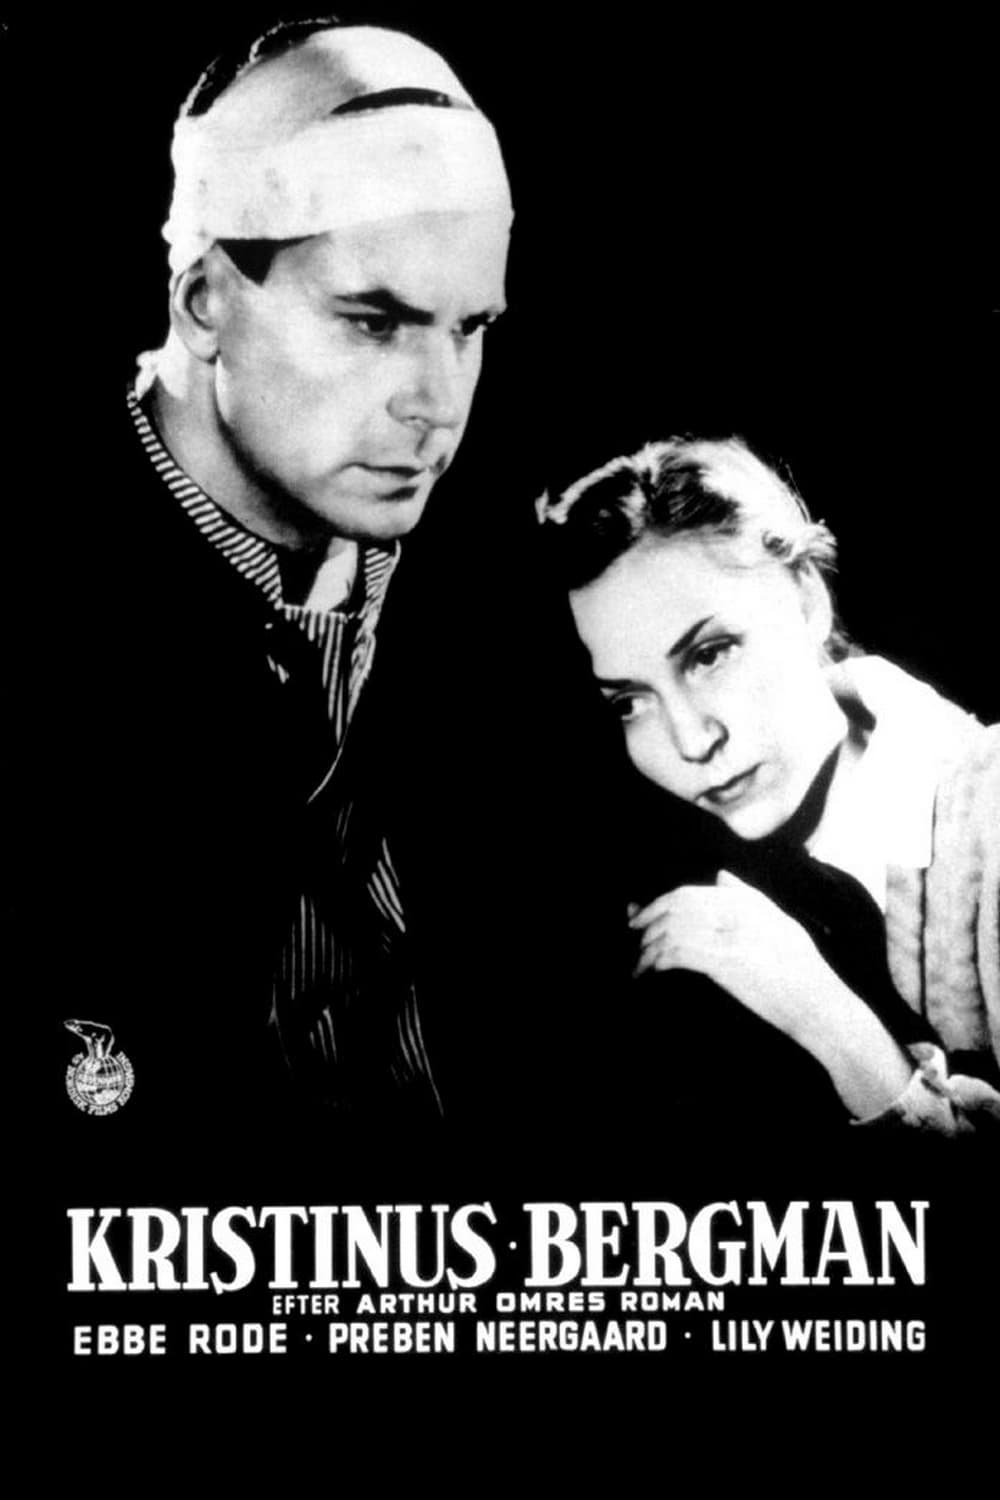 Kristinus Bergman (1948)